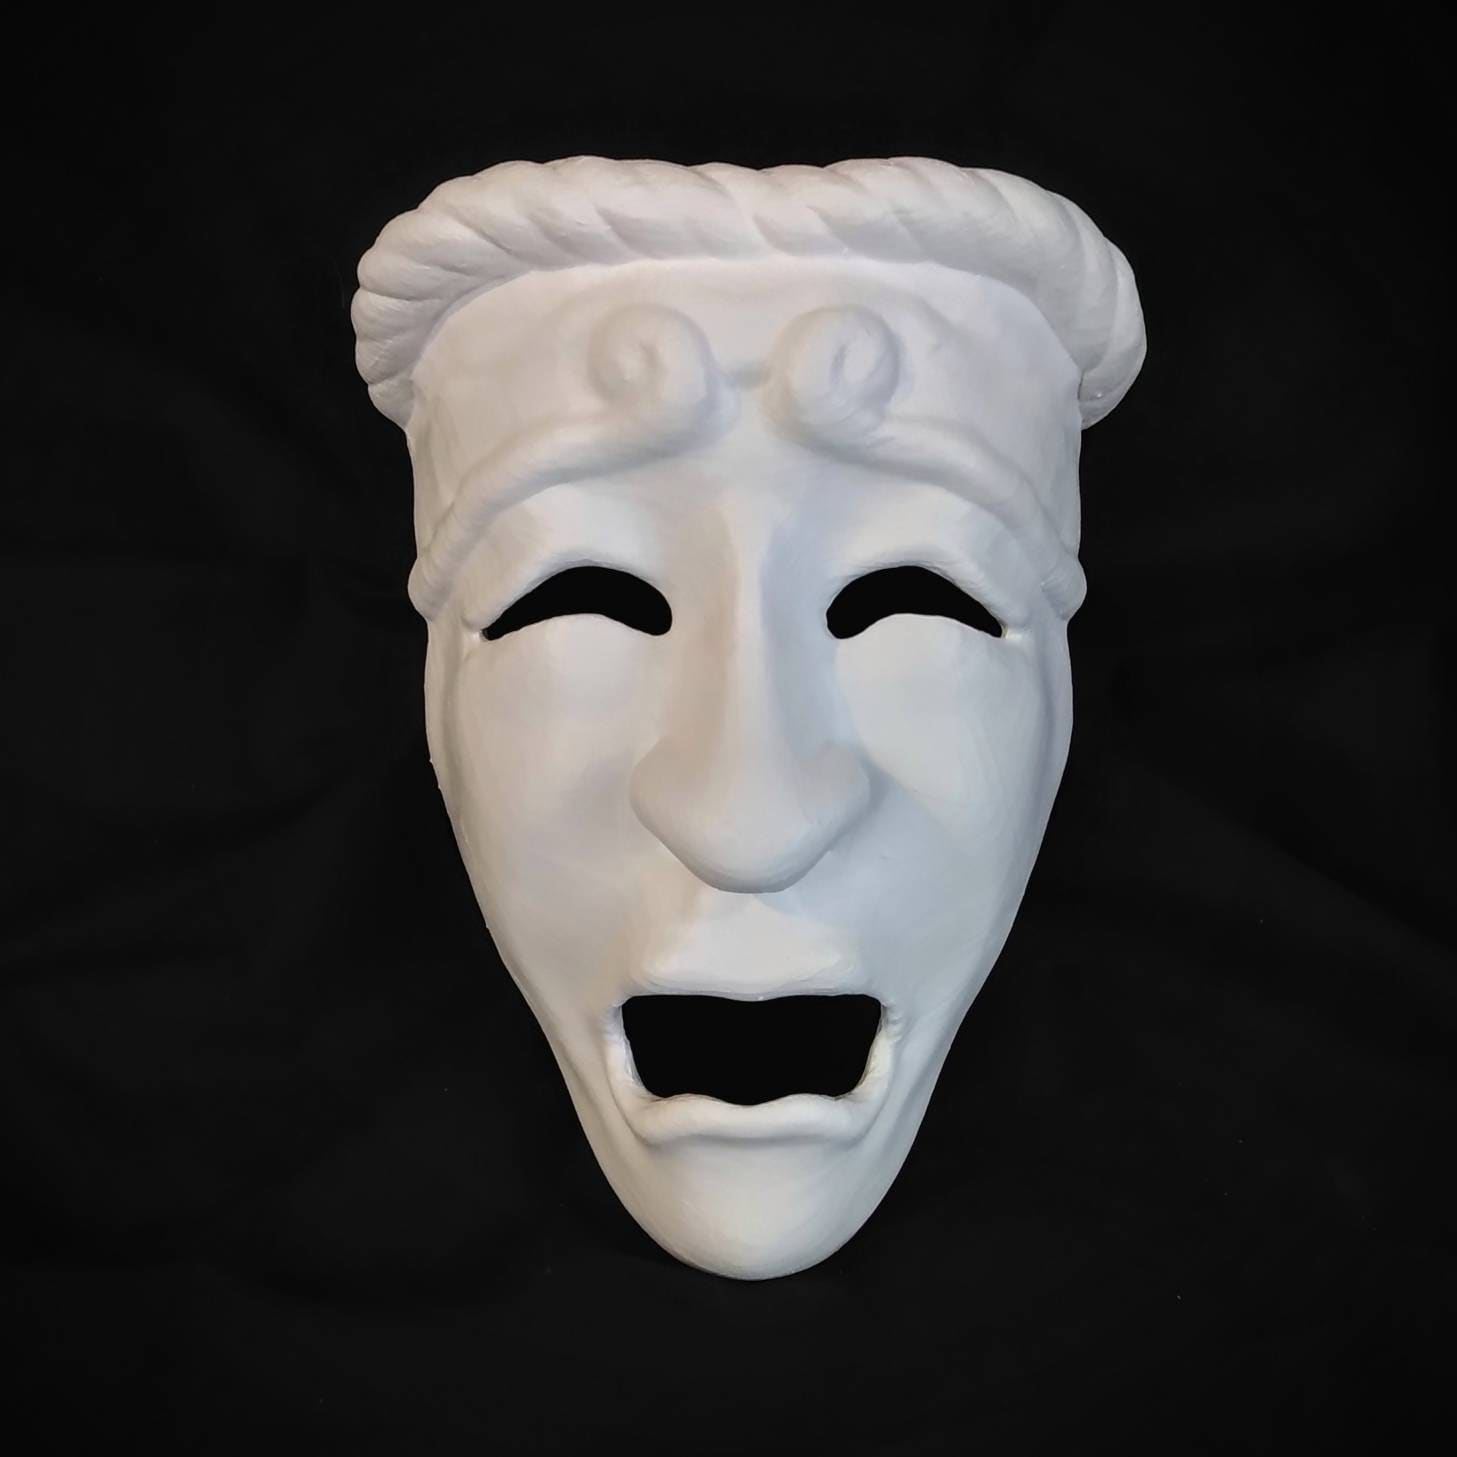 Greek Tragedy Mask / Theater Mask 